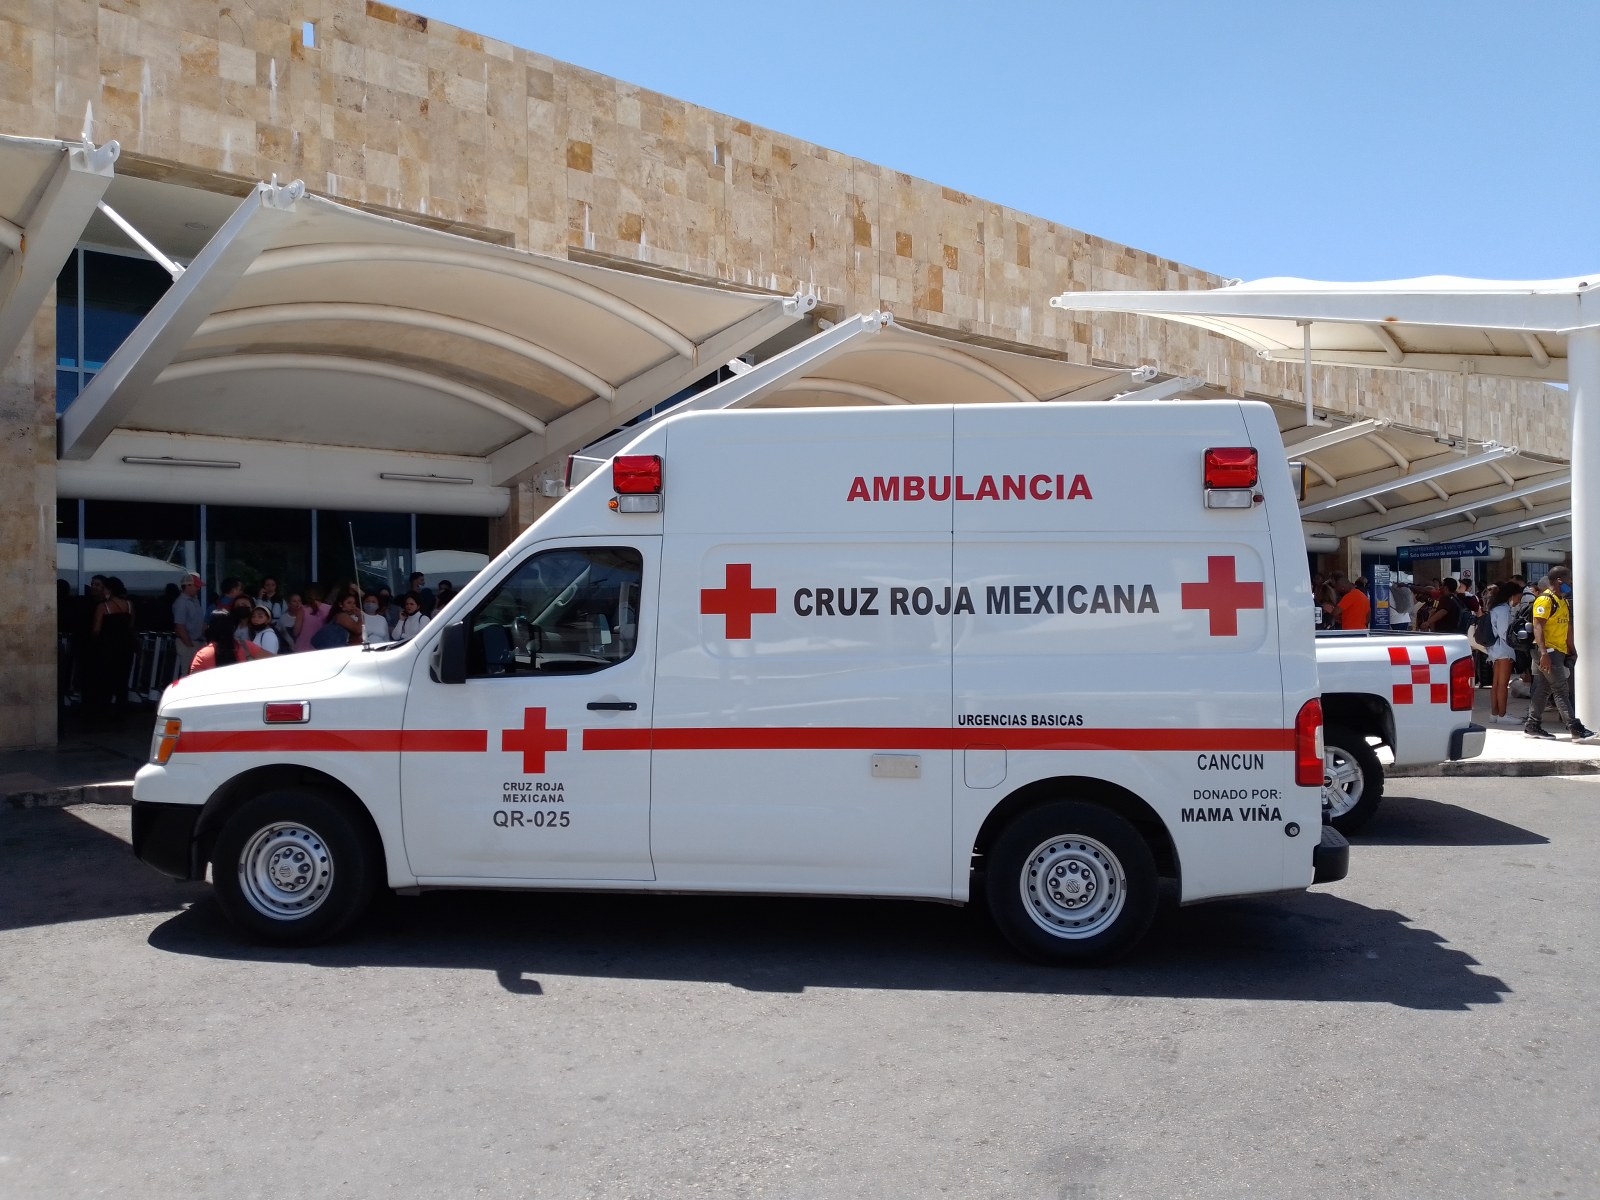 La Cruz Roja dispuso dos ambulancias y seis paramédicos de guardia por si se reporta alguna emergencia en el aeropuerto de Cancún